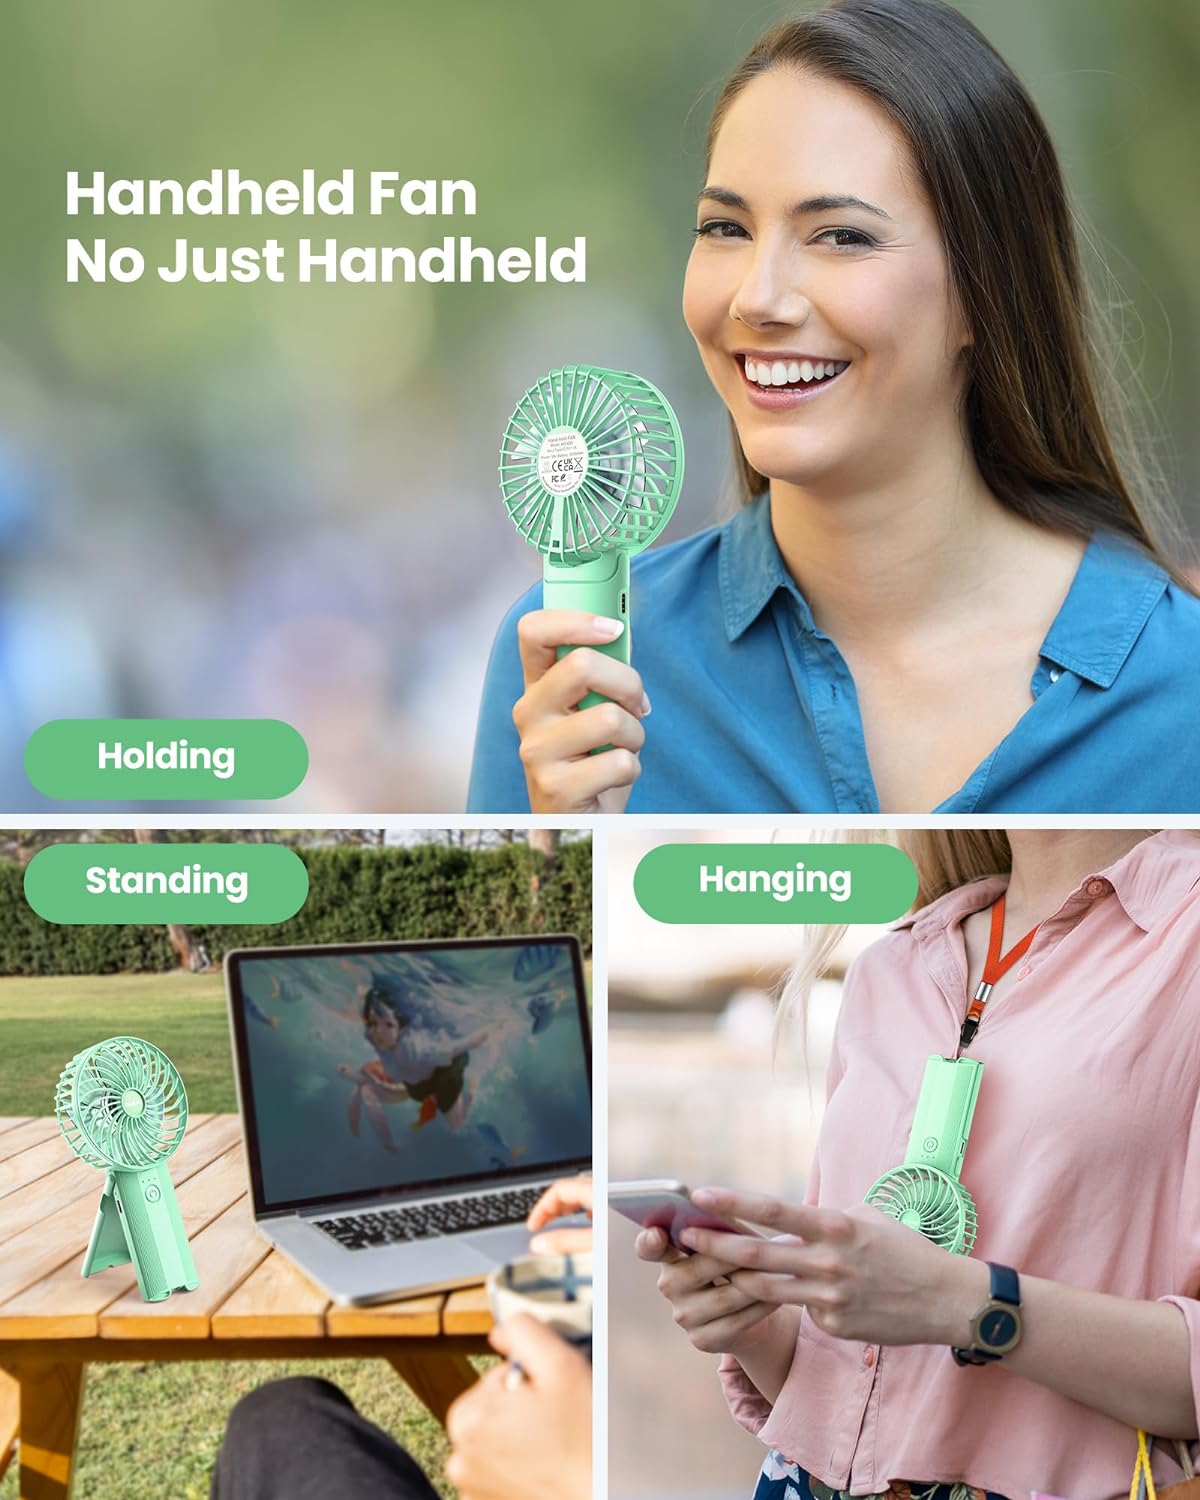 AaoLin Handheld Fan [6-15H Working Time] Foldable Hand Held Fan USB Rechargeable, 4 Speeds Portable Personal Mini Fan, Battery Operated Desk Fan for Stylish Girl Women Travel/Commute/Makeup/Office